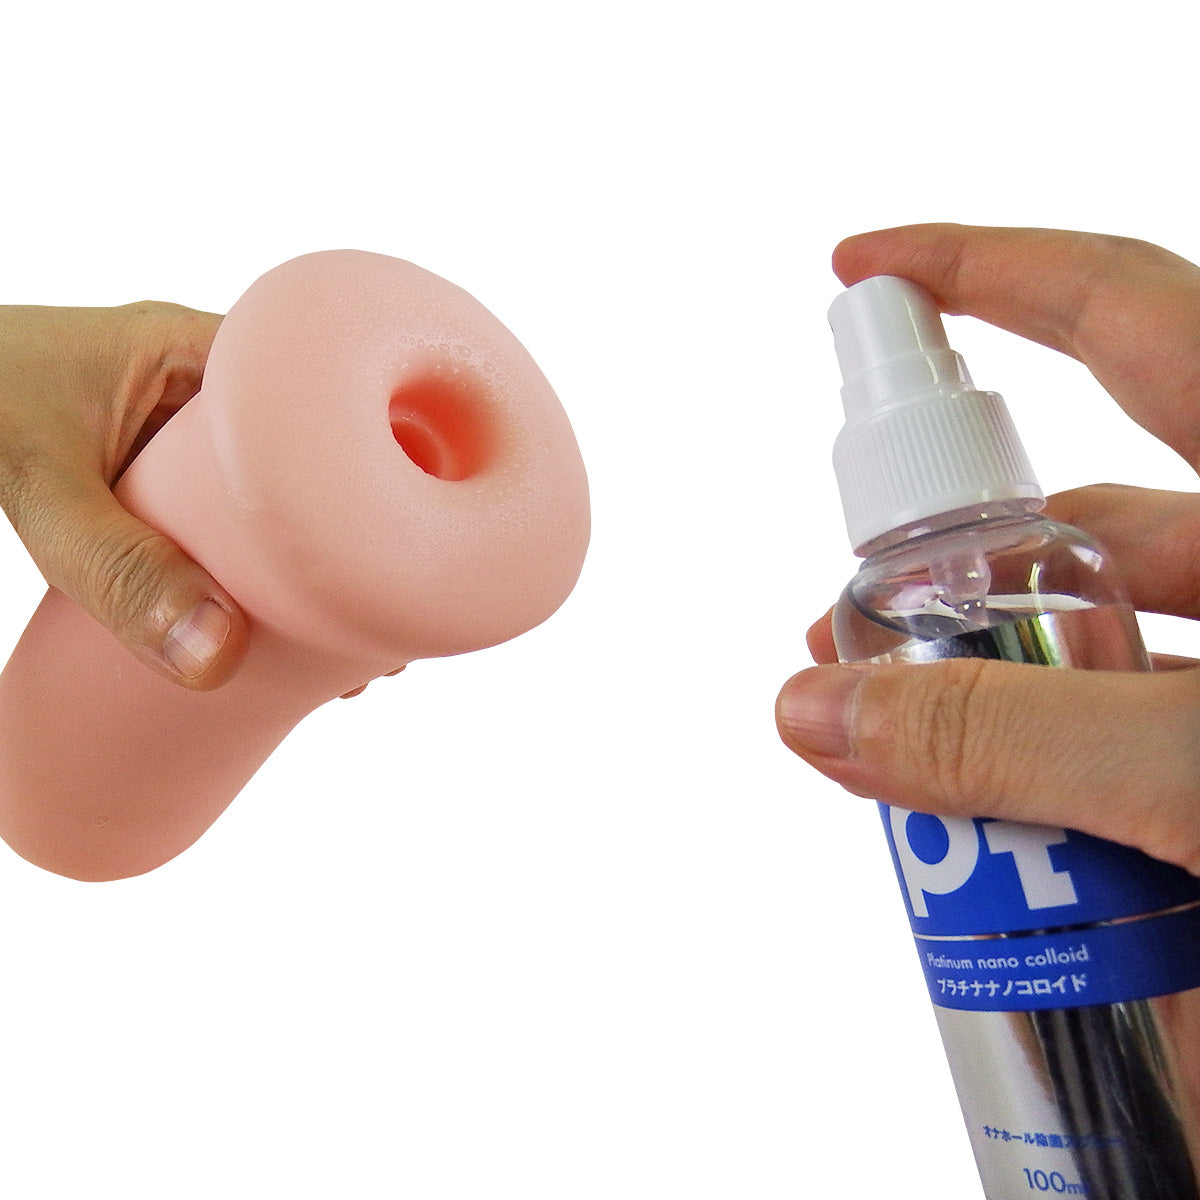 SSI JAPAN Pt 抗菌消臭抗酸化玩具清潔保養噴霧 100 毫升 情趣用品清潔及配件 購買